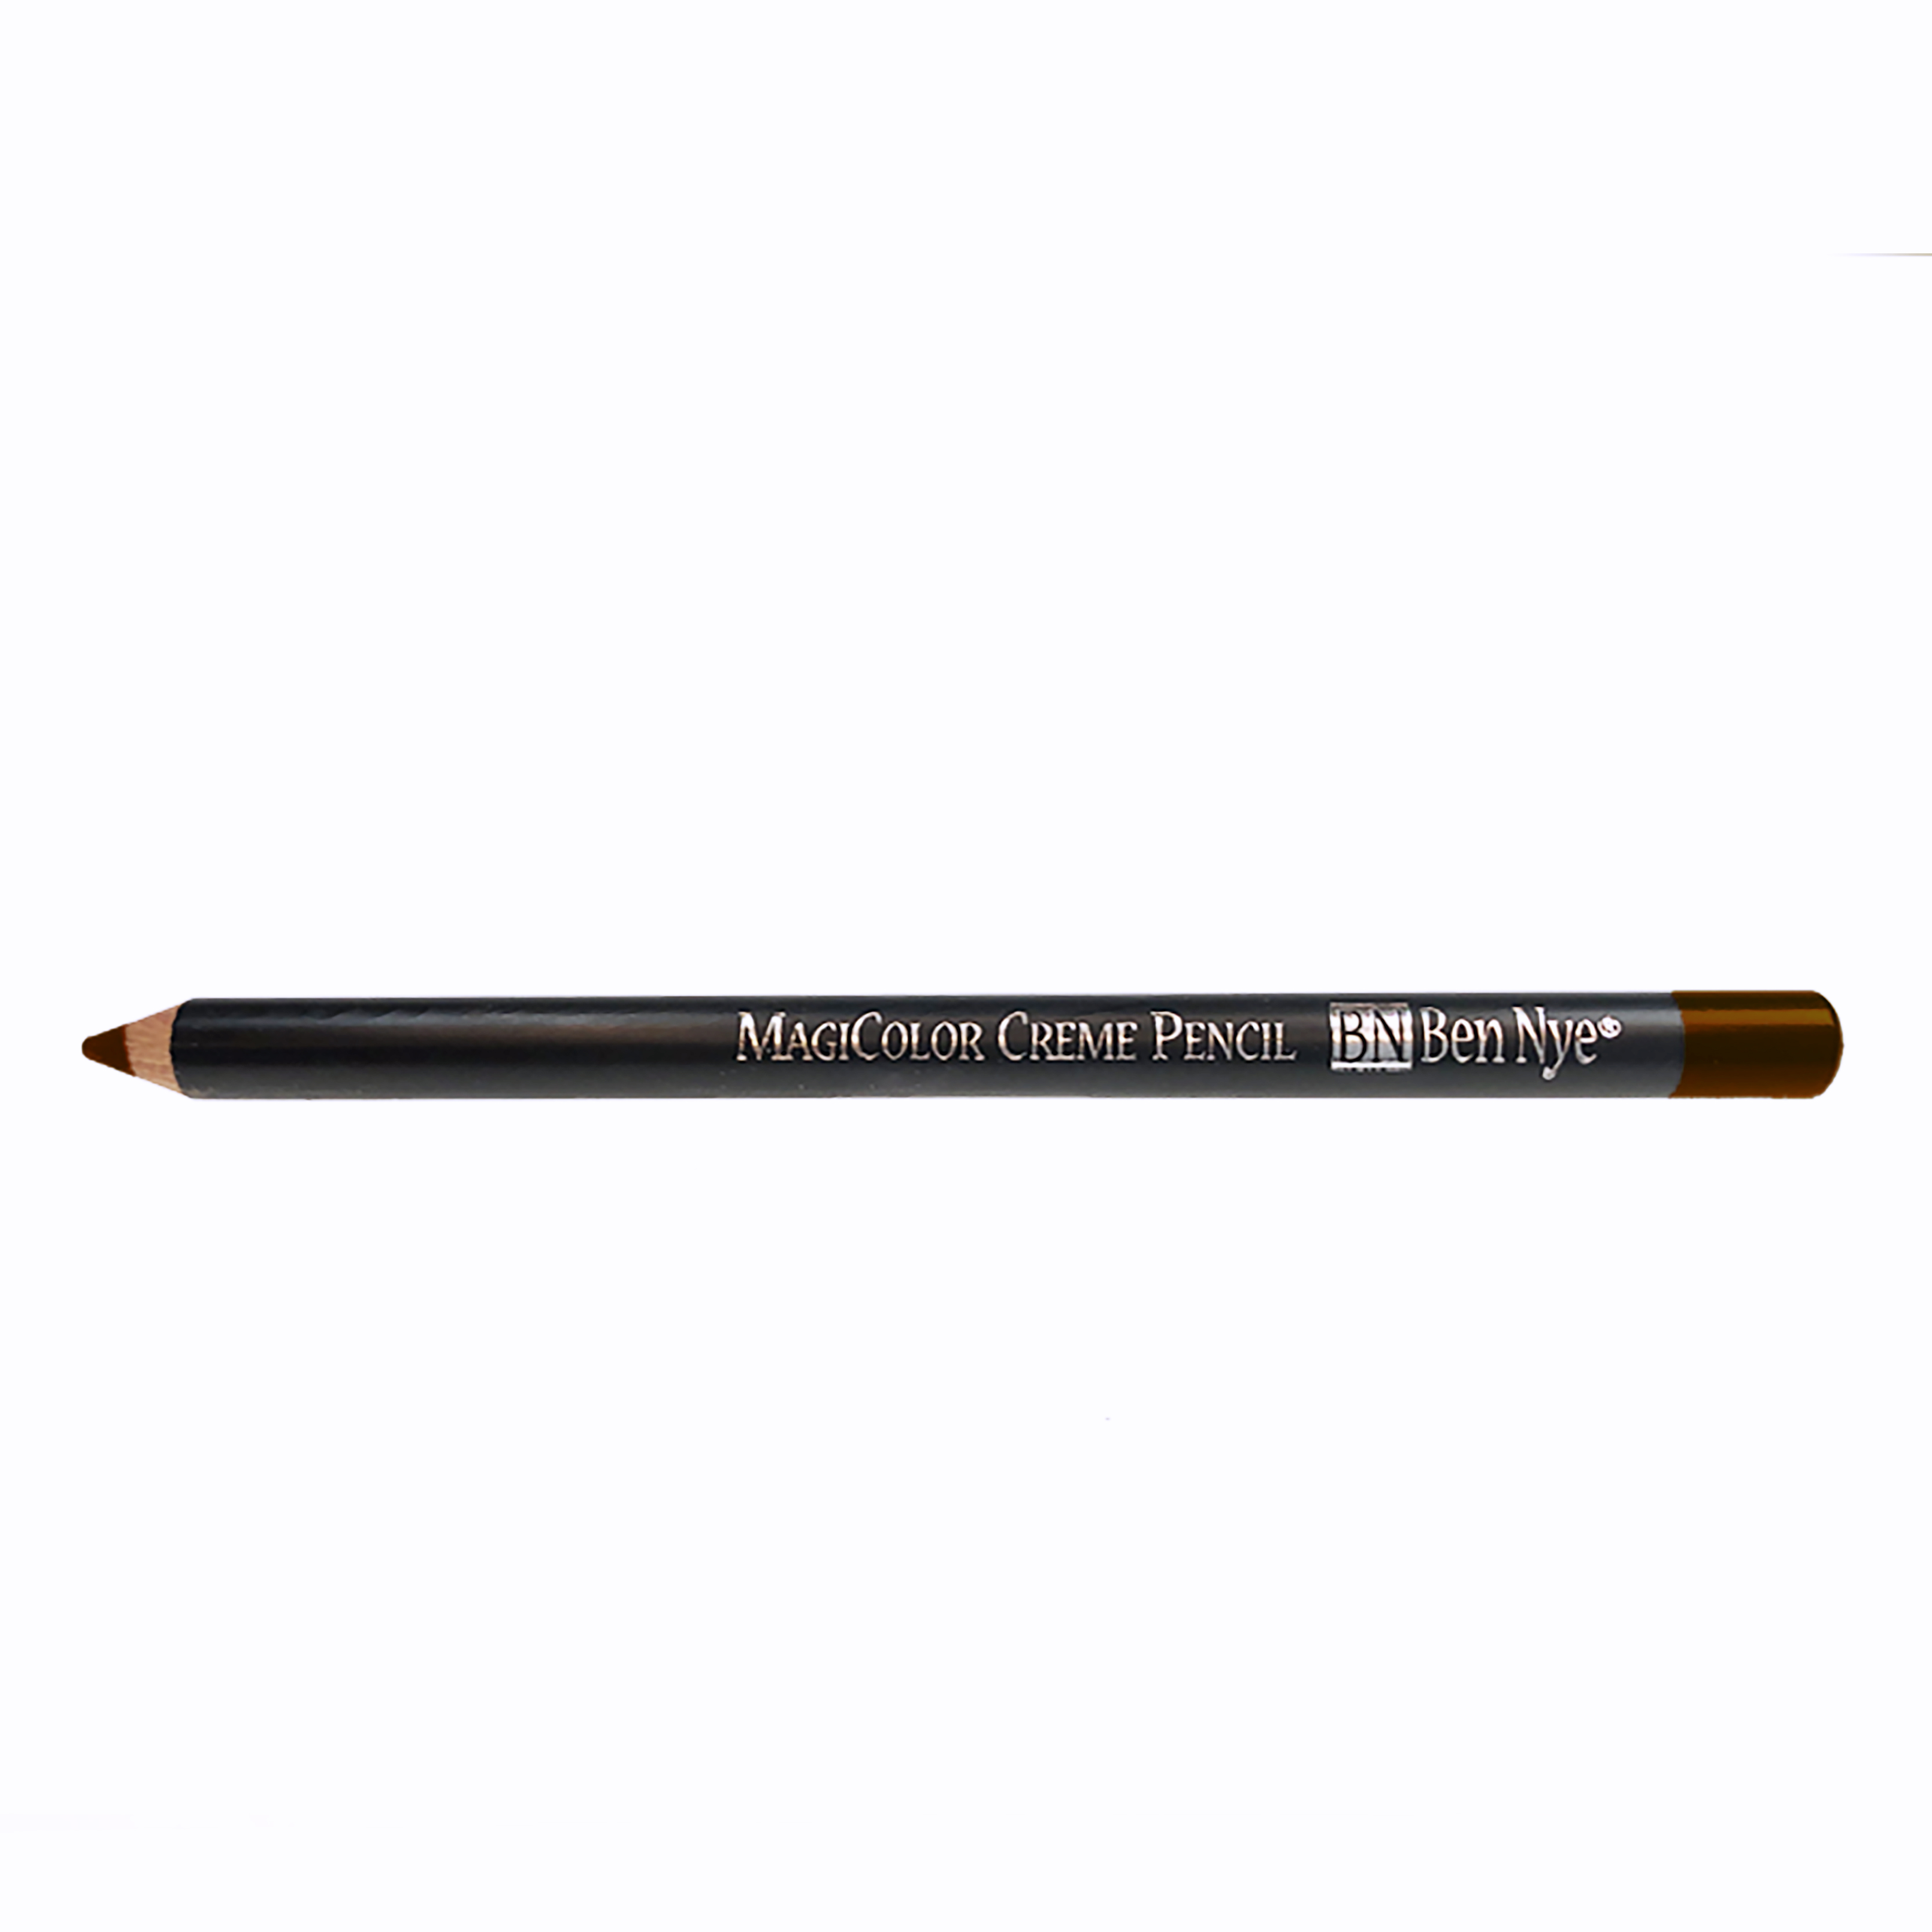 Magicolor Creme Pencils - Warm brown